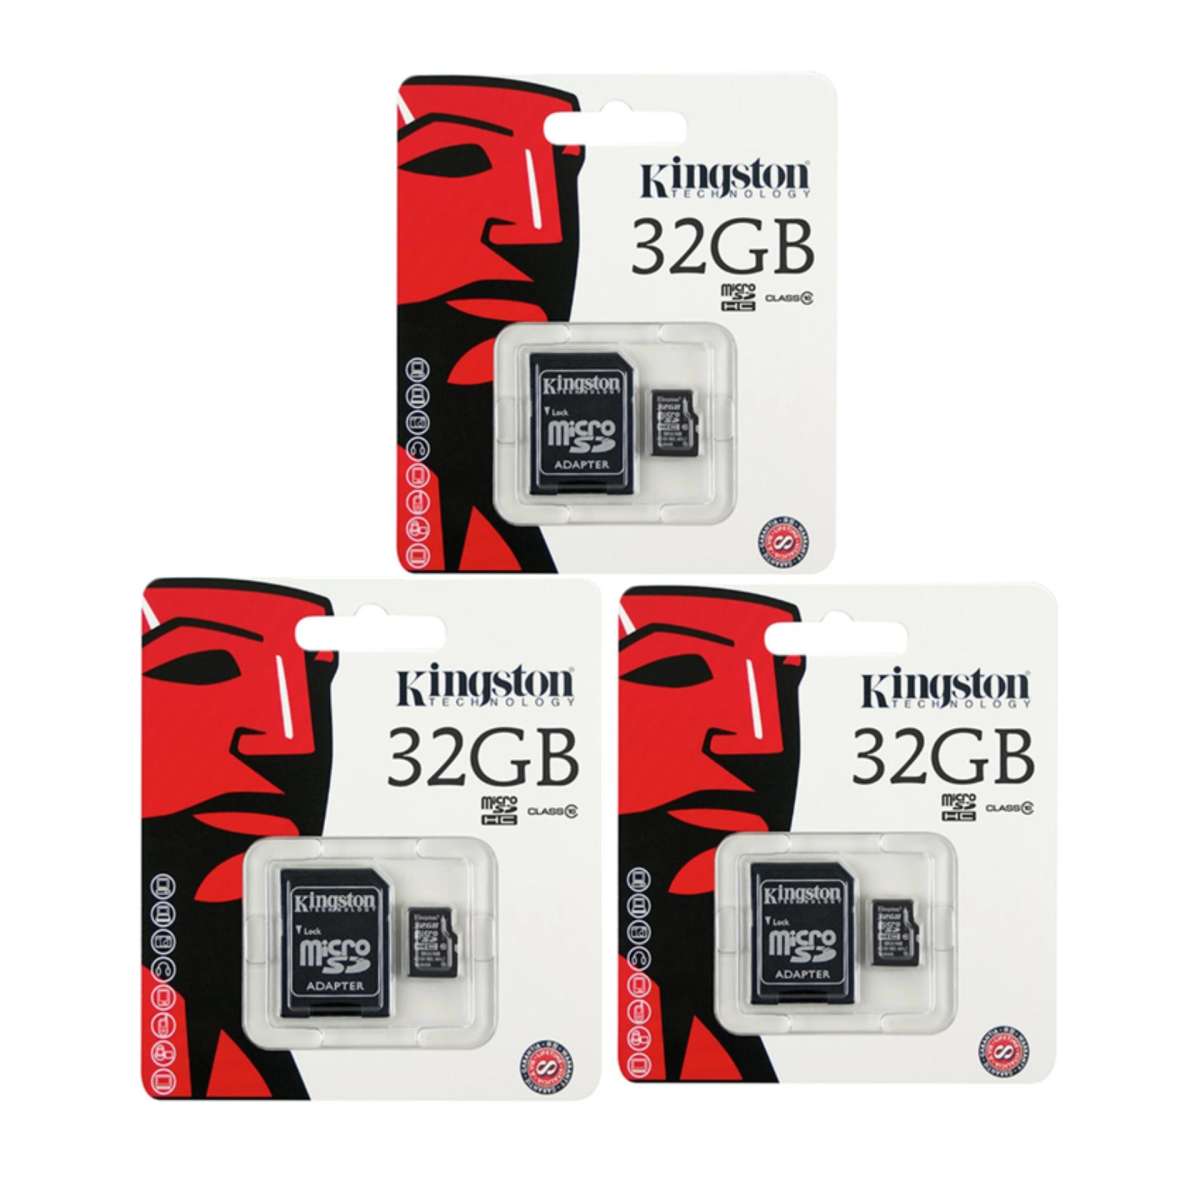 [[ของแท้]] Kingston 32GB Class 10 Micro SD SDHC คิงส์ตัน เมมโมรี่การ์ด 32 GB